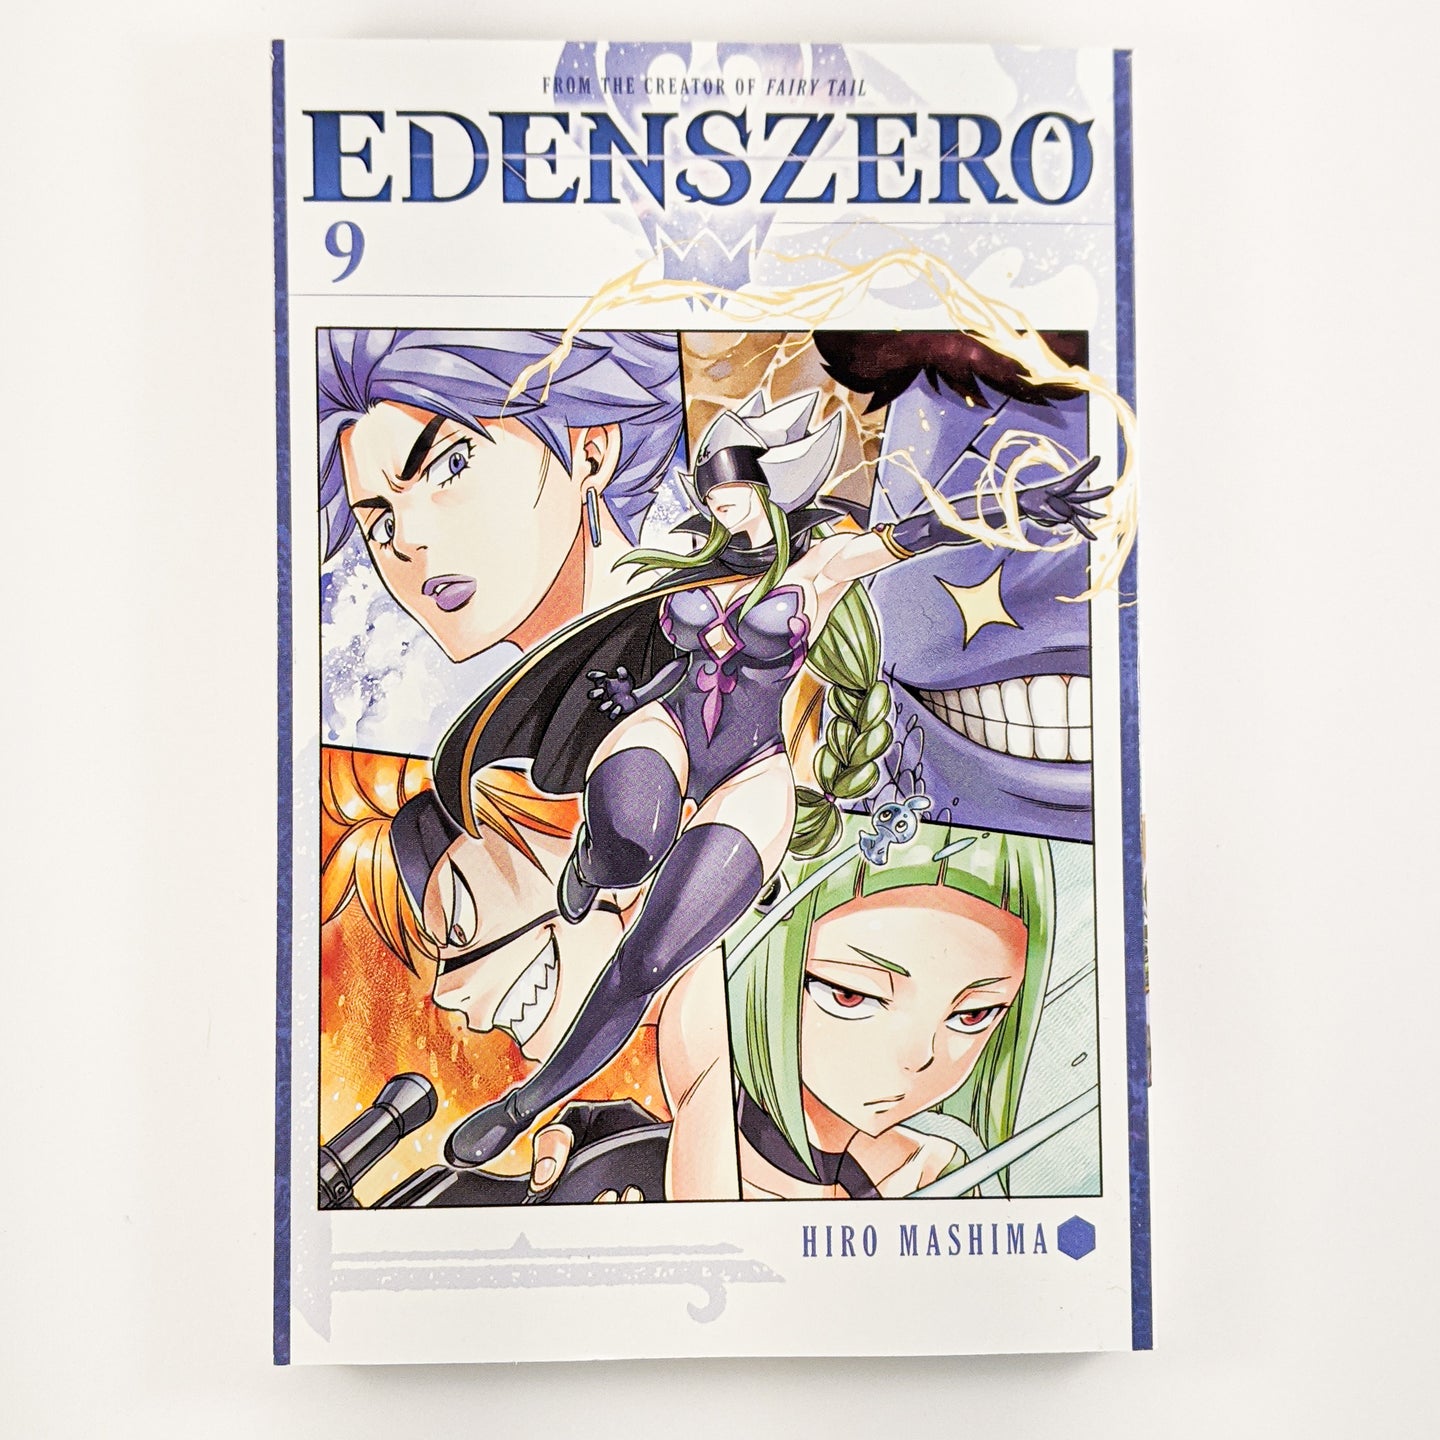 Edens Zero Manga volume 9. Manga by Hiro Mashima, the creator of Fairy Tail!